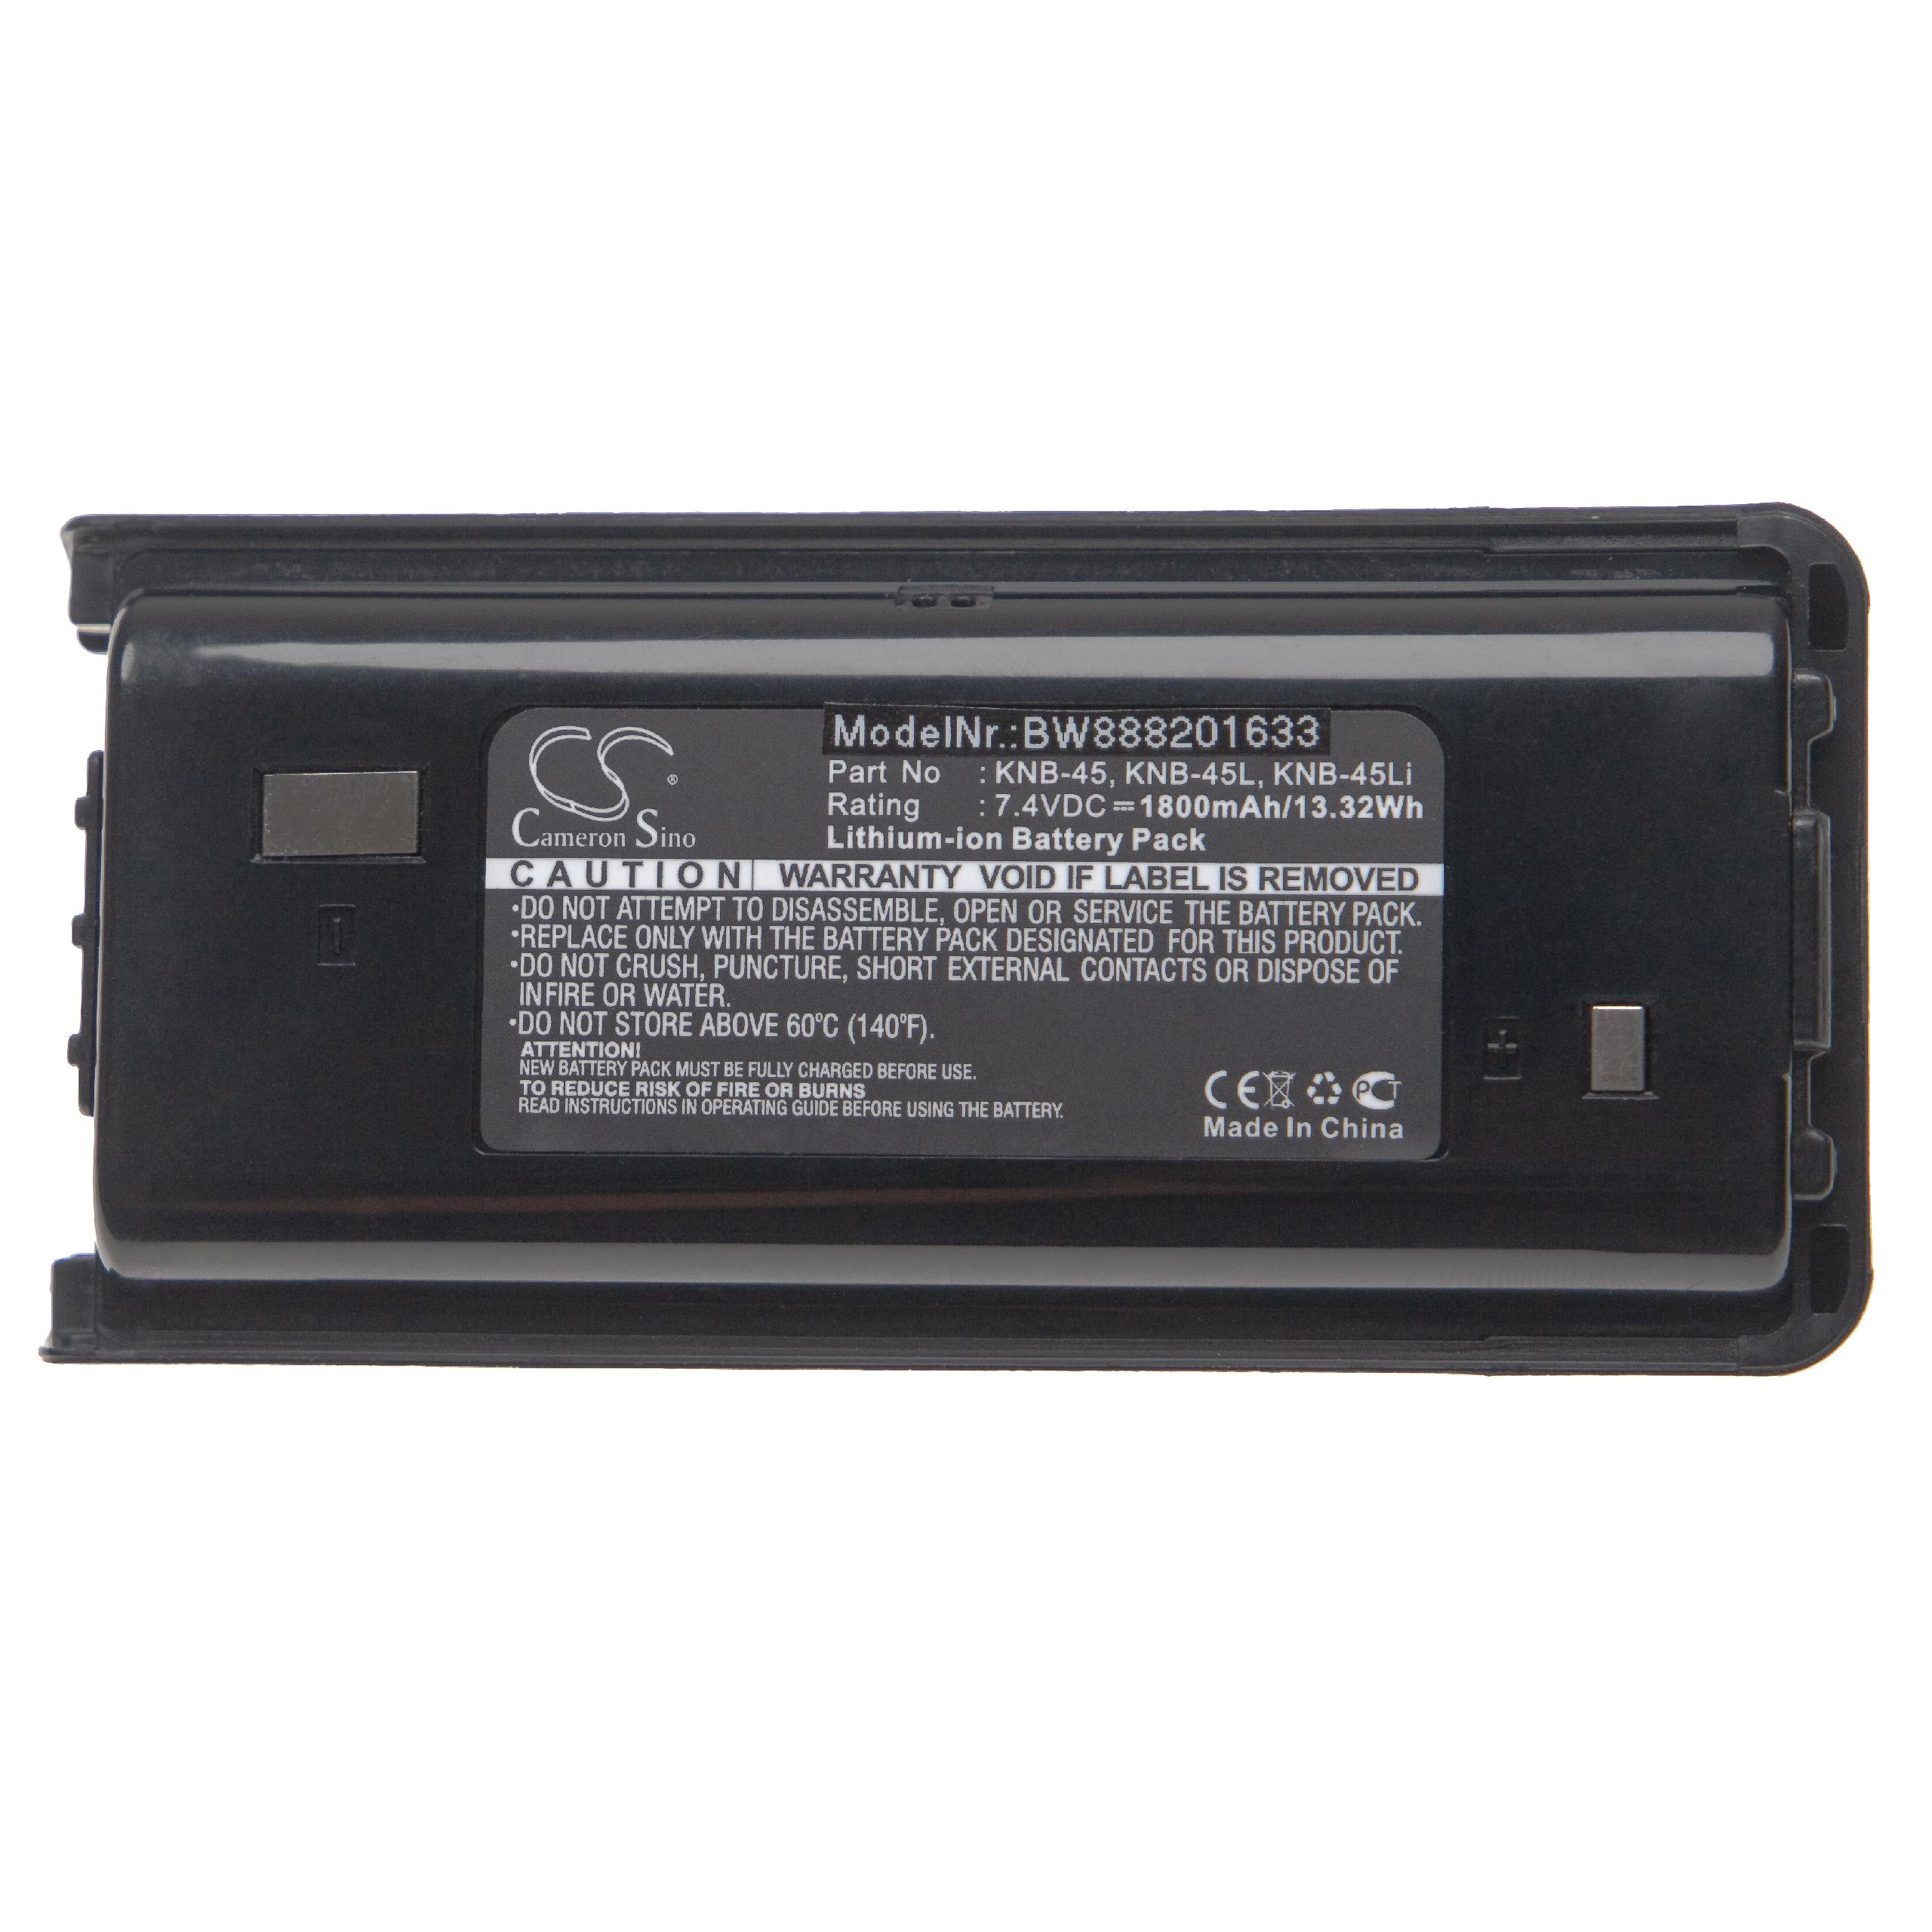 Batteria per dispositivo radio sostituisce Kenwood KNB-45L, KNB-45Li, KNB-45 Kenwood - 1800mAh 7,4V Li-Ion